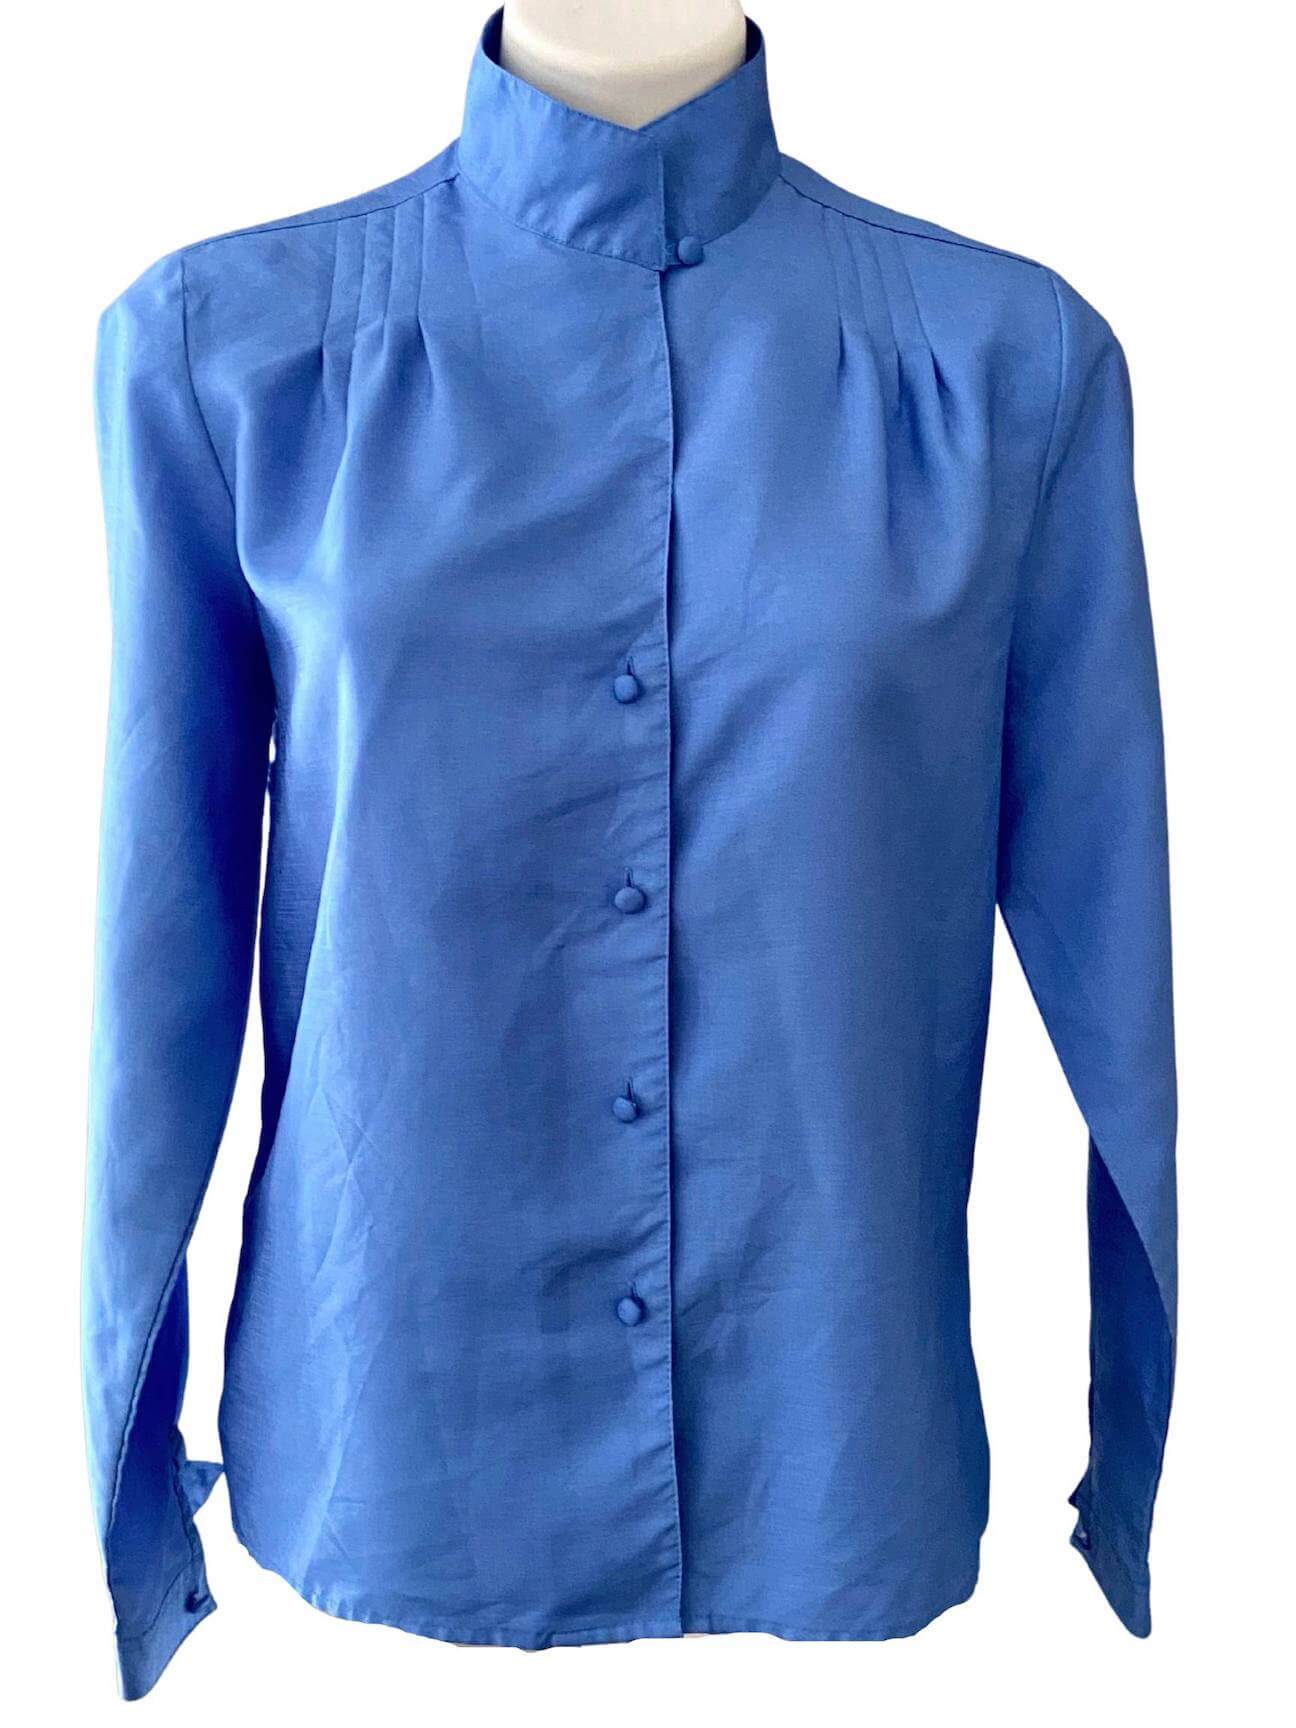 Light Summer blue shimmer blouse